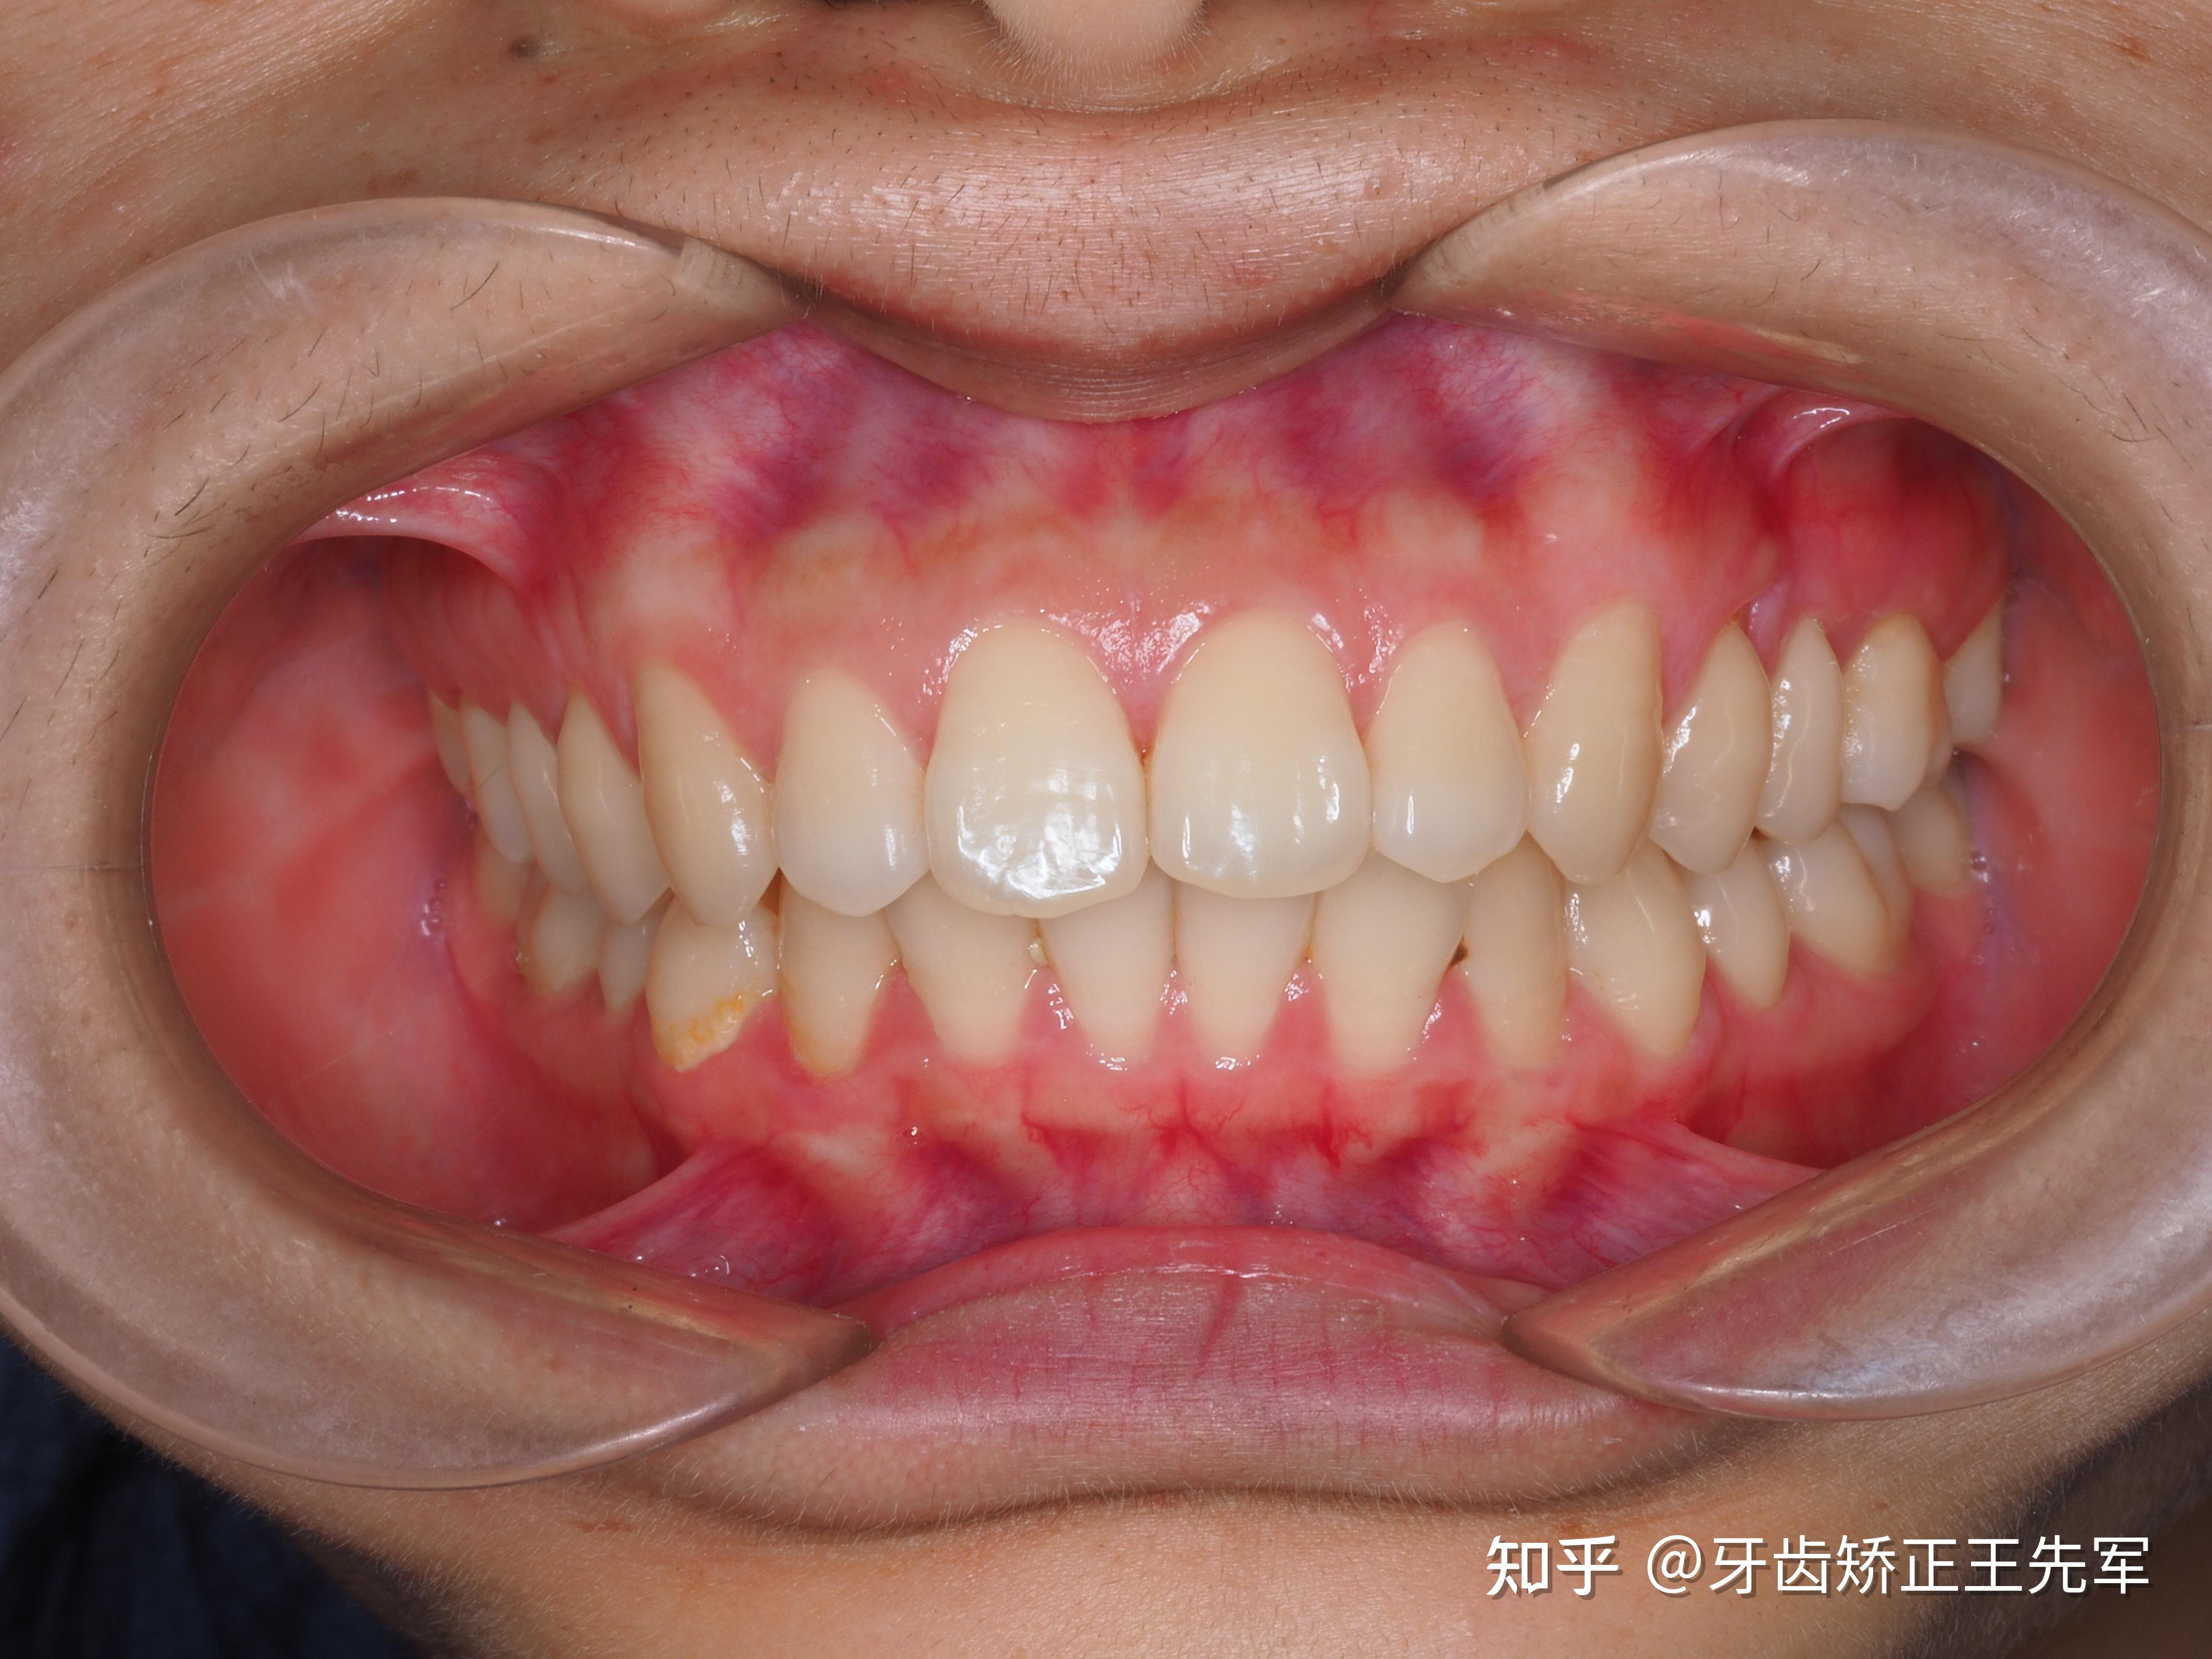 苏州牙齿矫正-牙齿畸形隐适美矫正案例